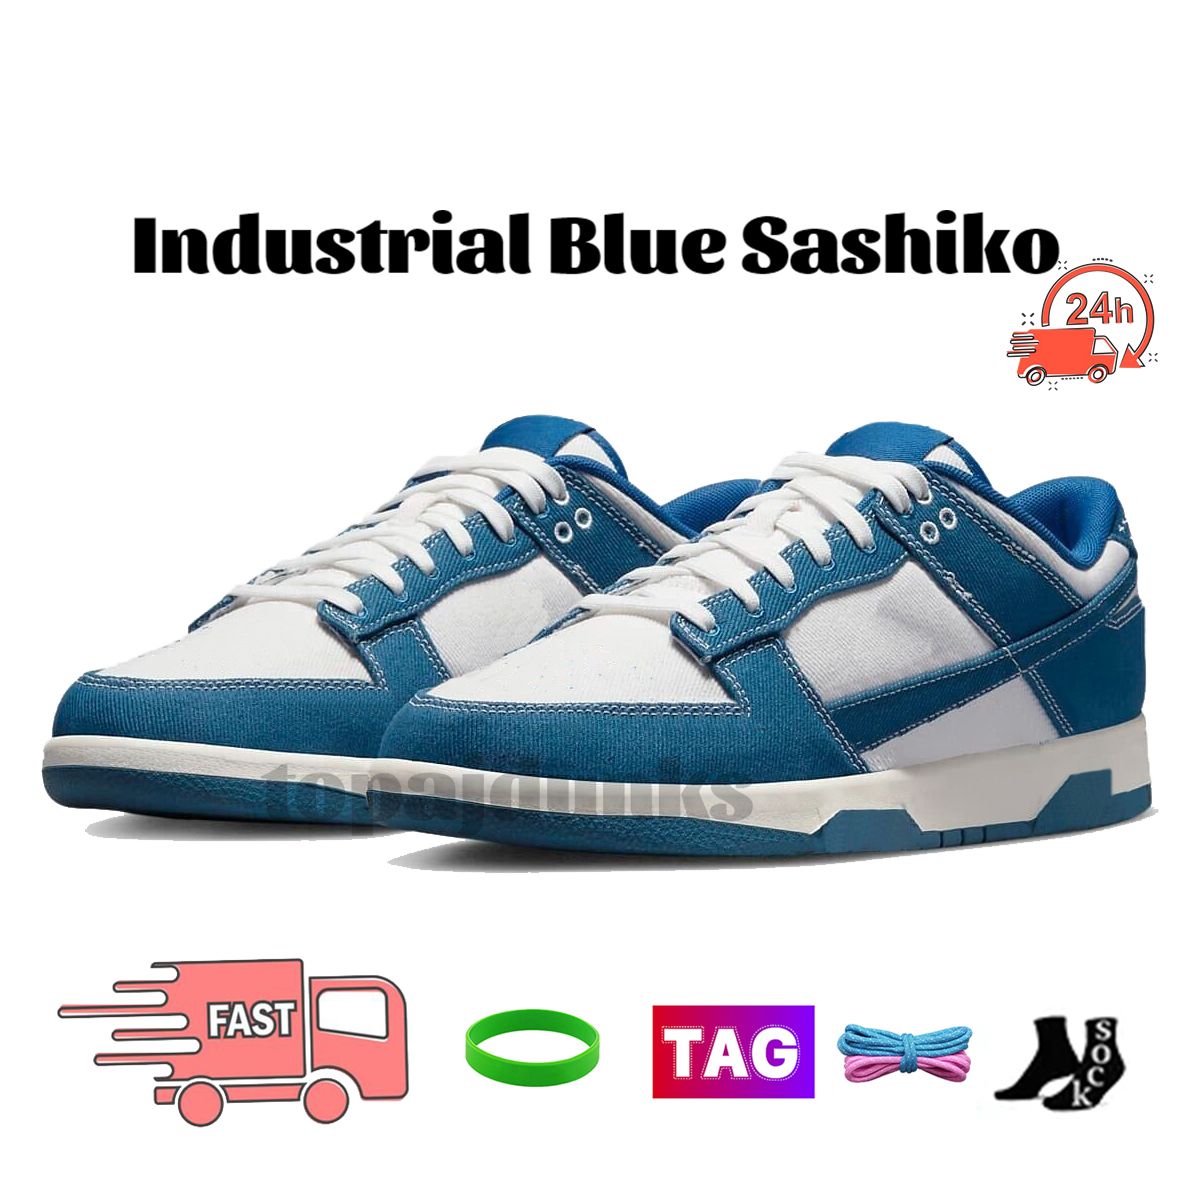 23 Endüstriyel Mavi Sashiko